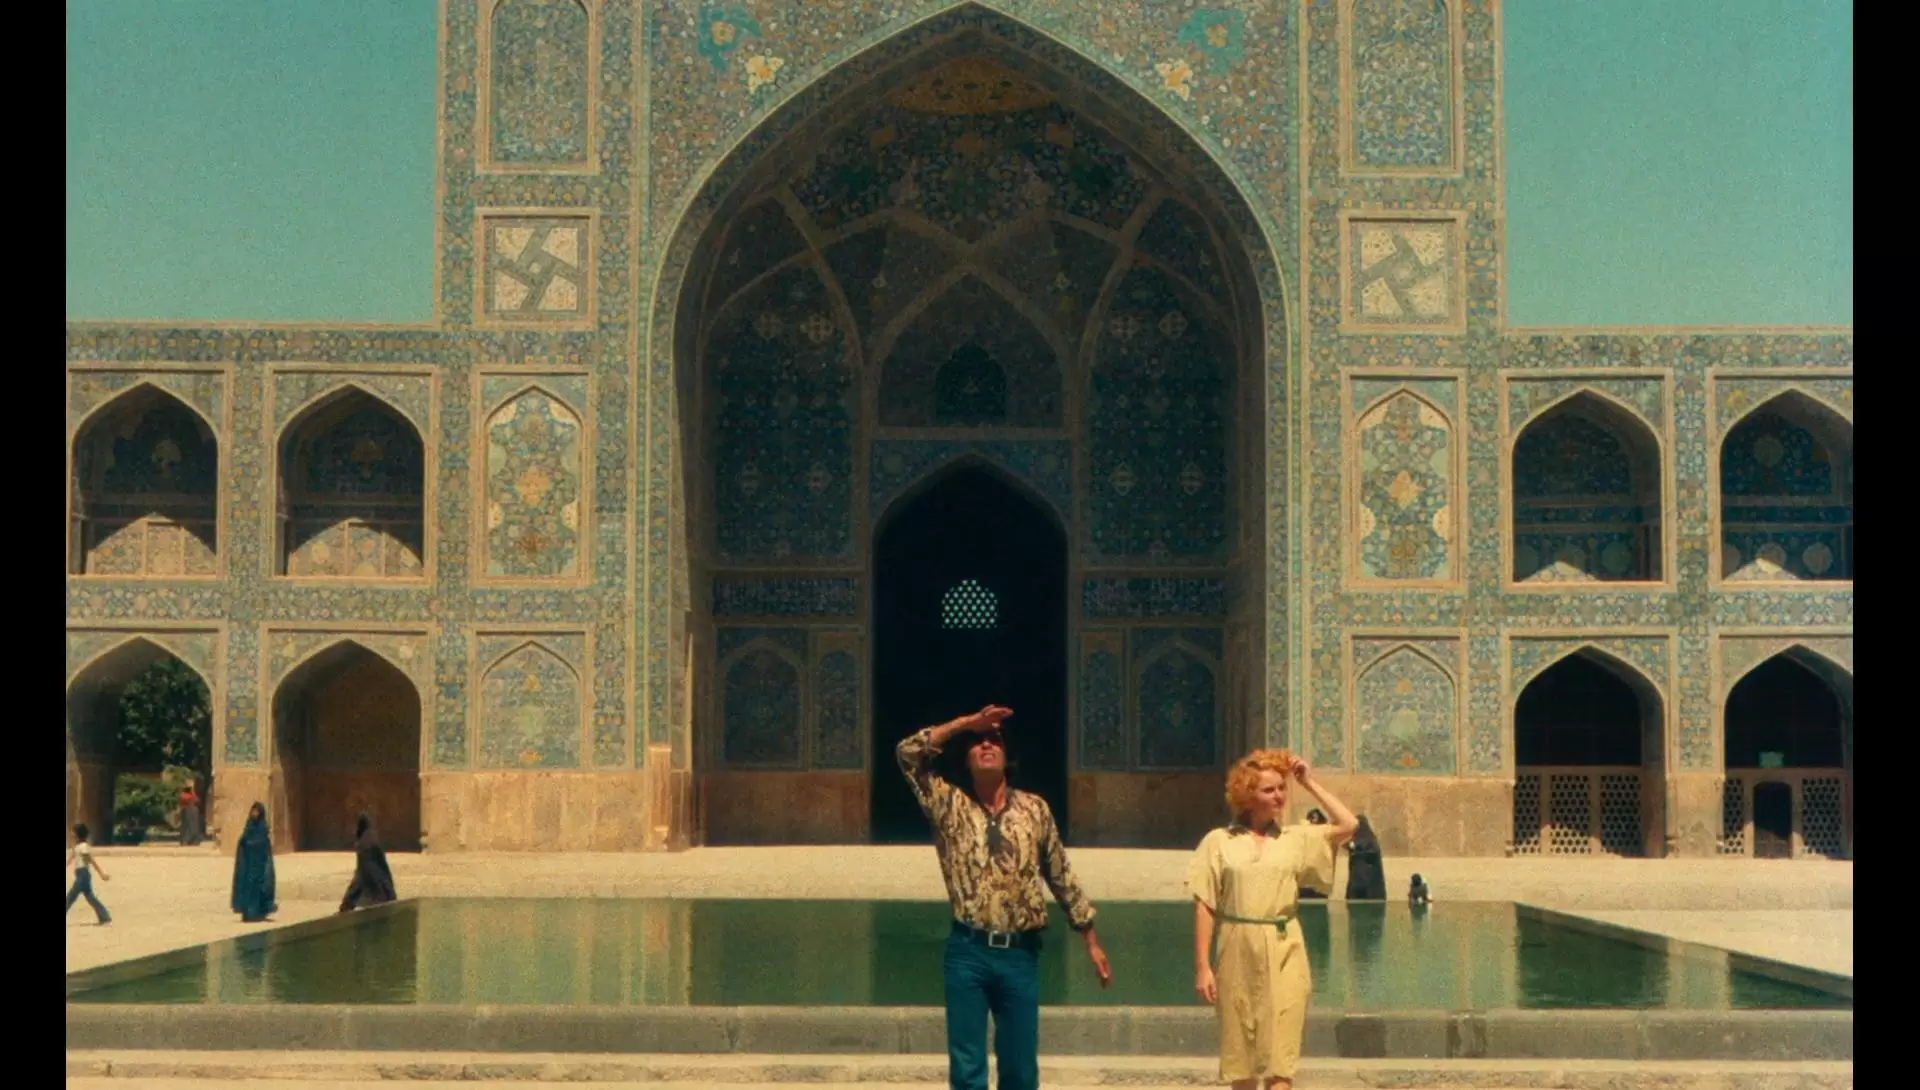 دانلود مستند The Pleasure of Love in Iran 1976 (لذت عشق در ایران) با زیرنویس فارسی و تماشای آنلاین